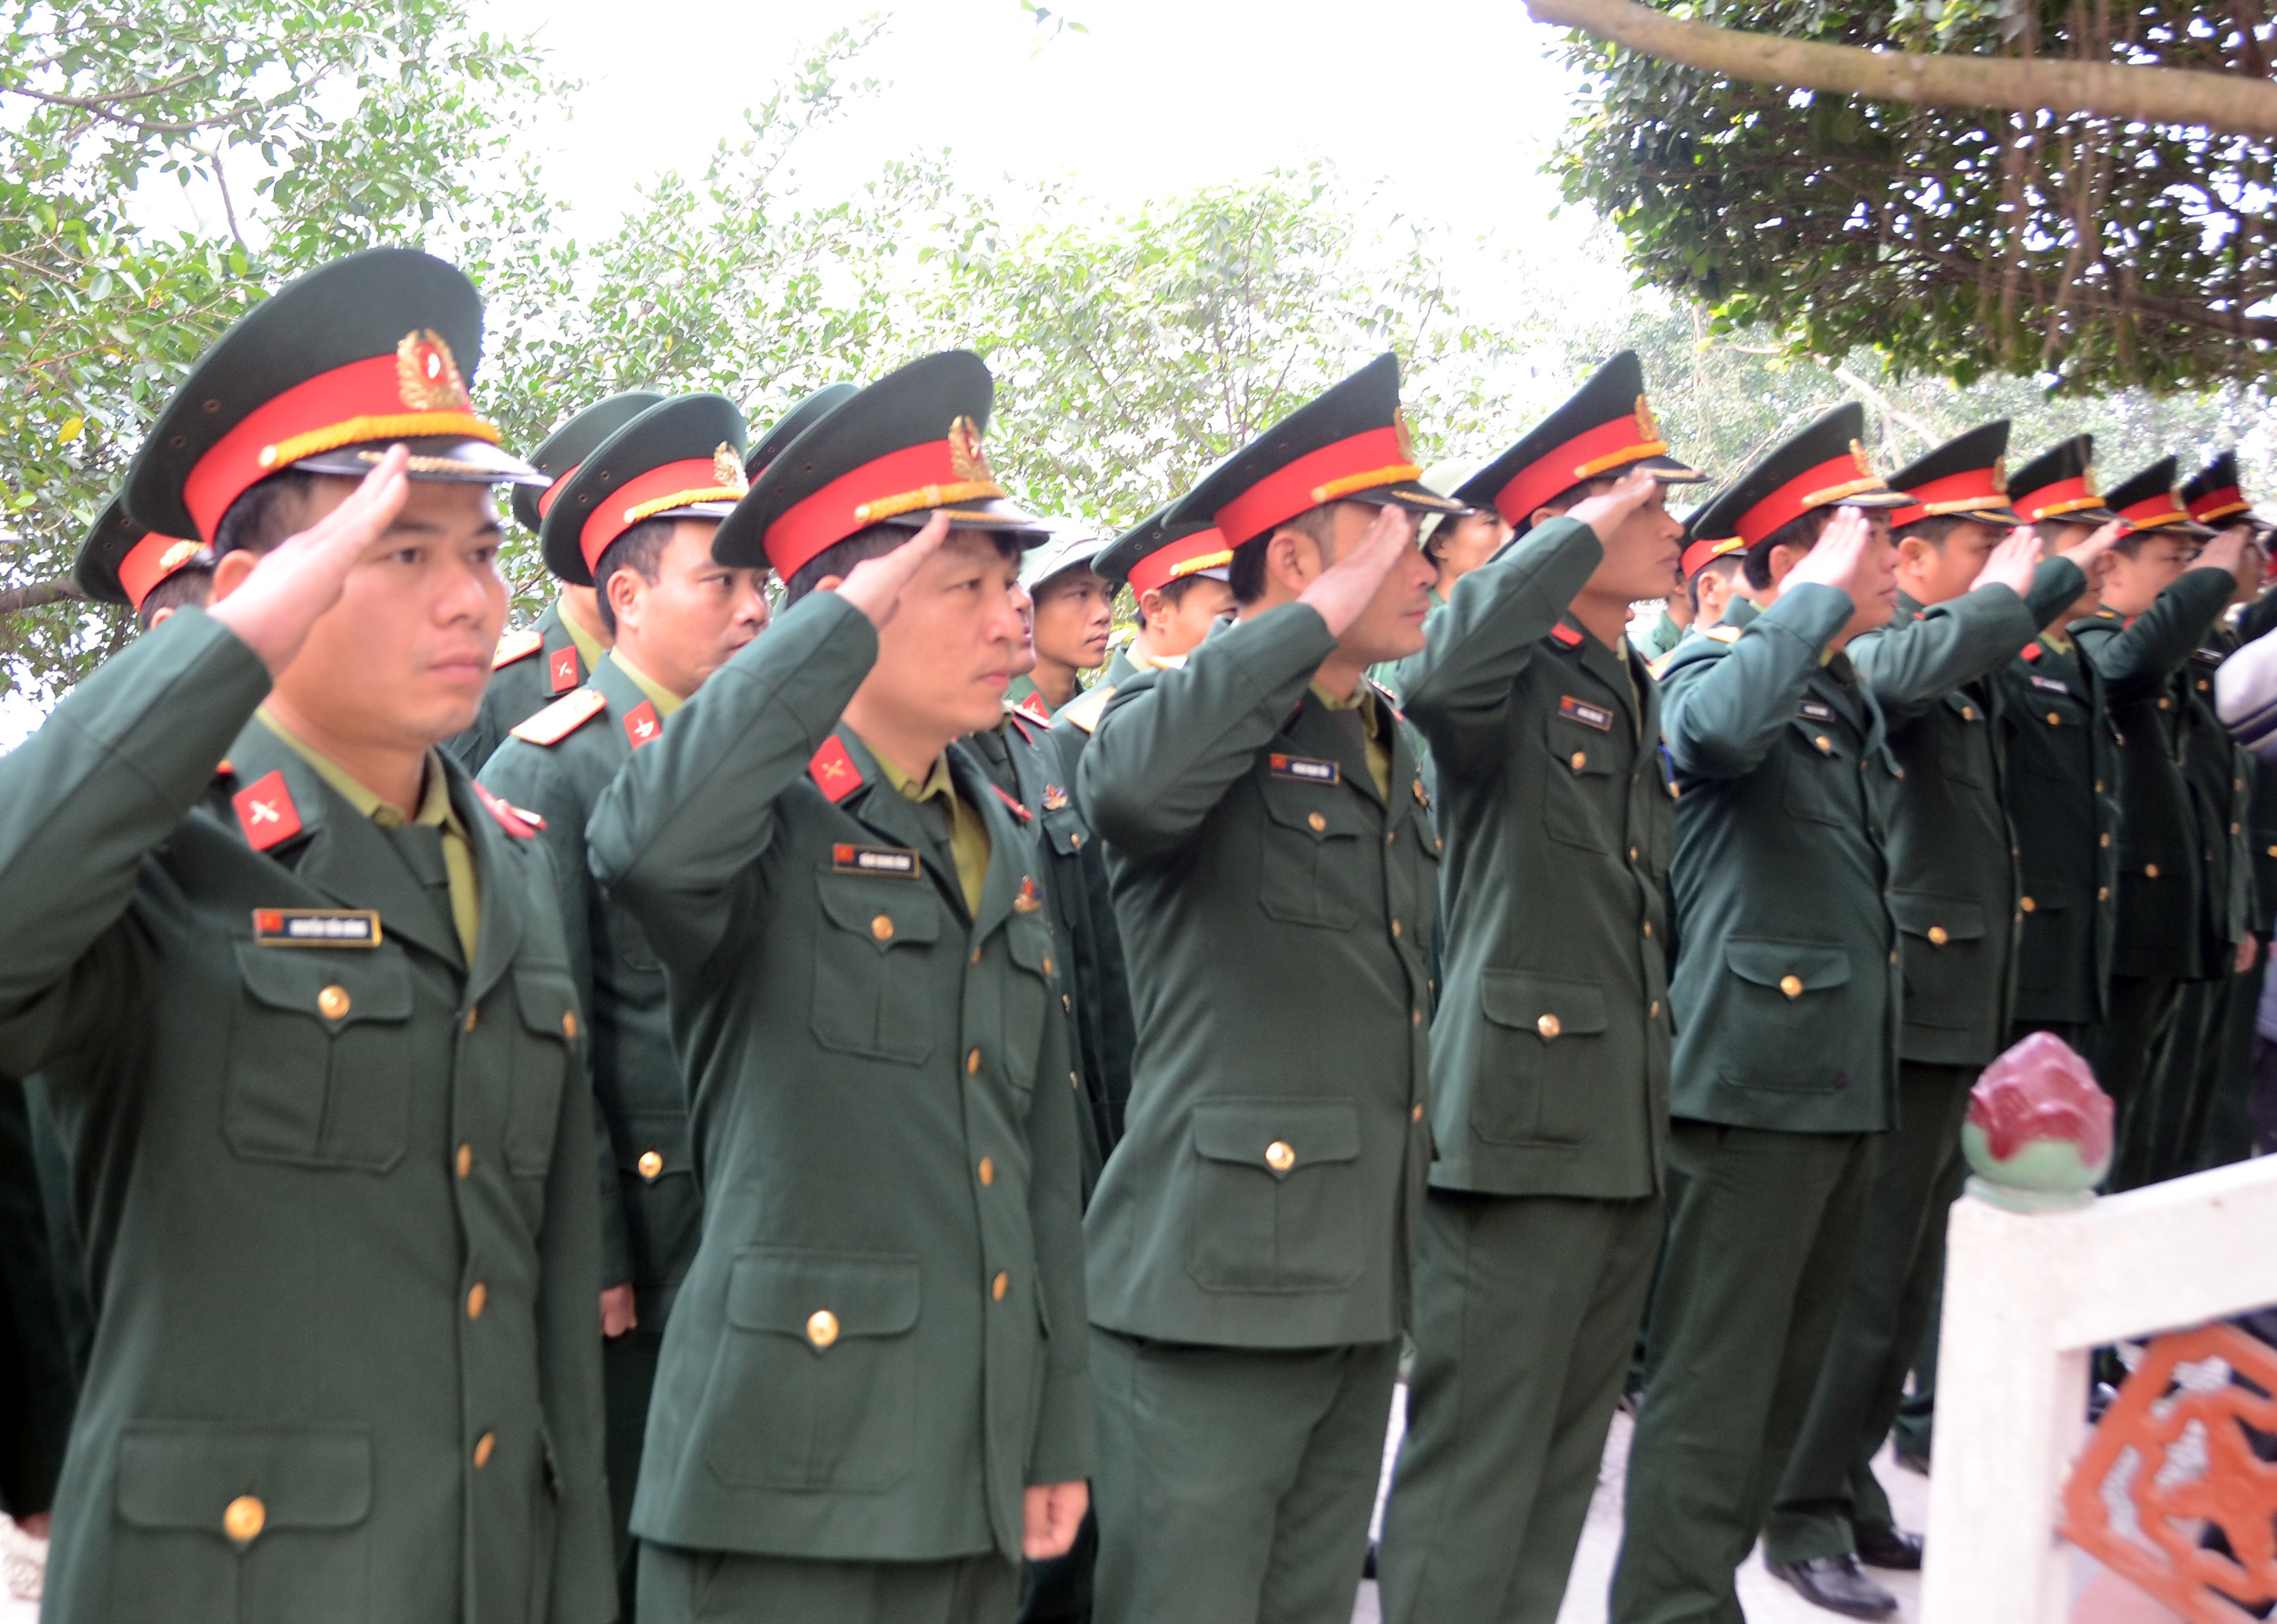 Cán bộ chiến sĩ Đảo Mắt thực hiện nghi lễ chào cờ đầu năm vào sáng Mùng Một Tết. Ảnh: Thành Chung